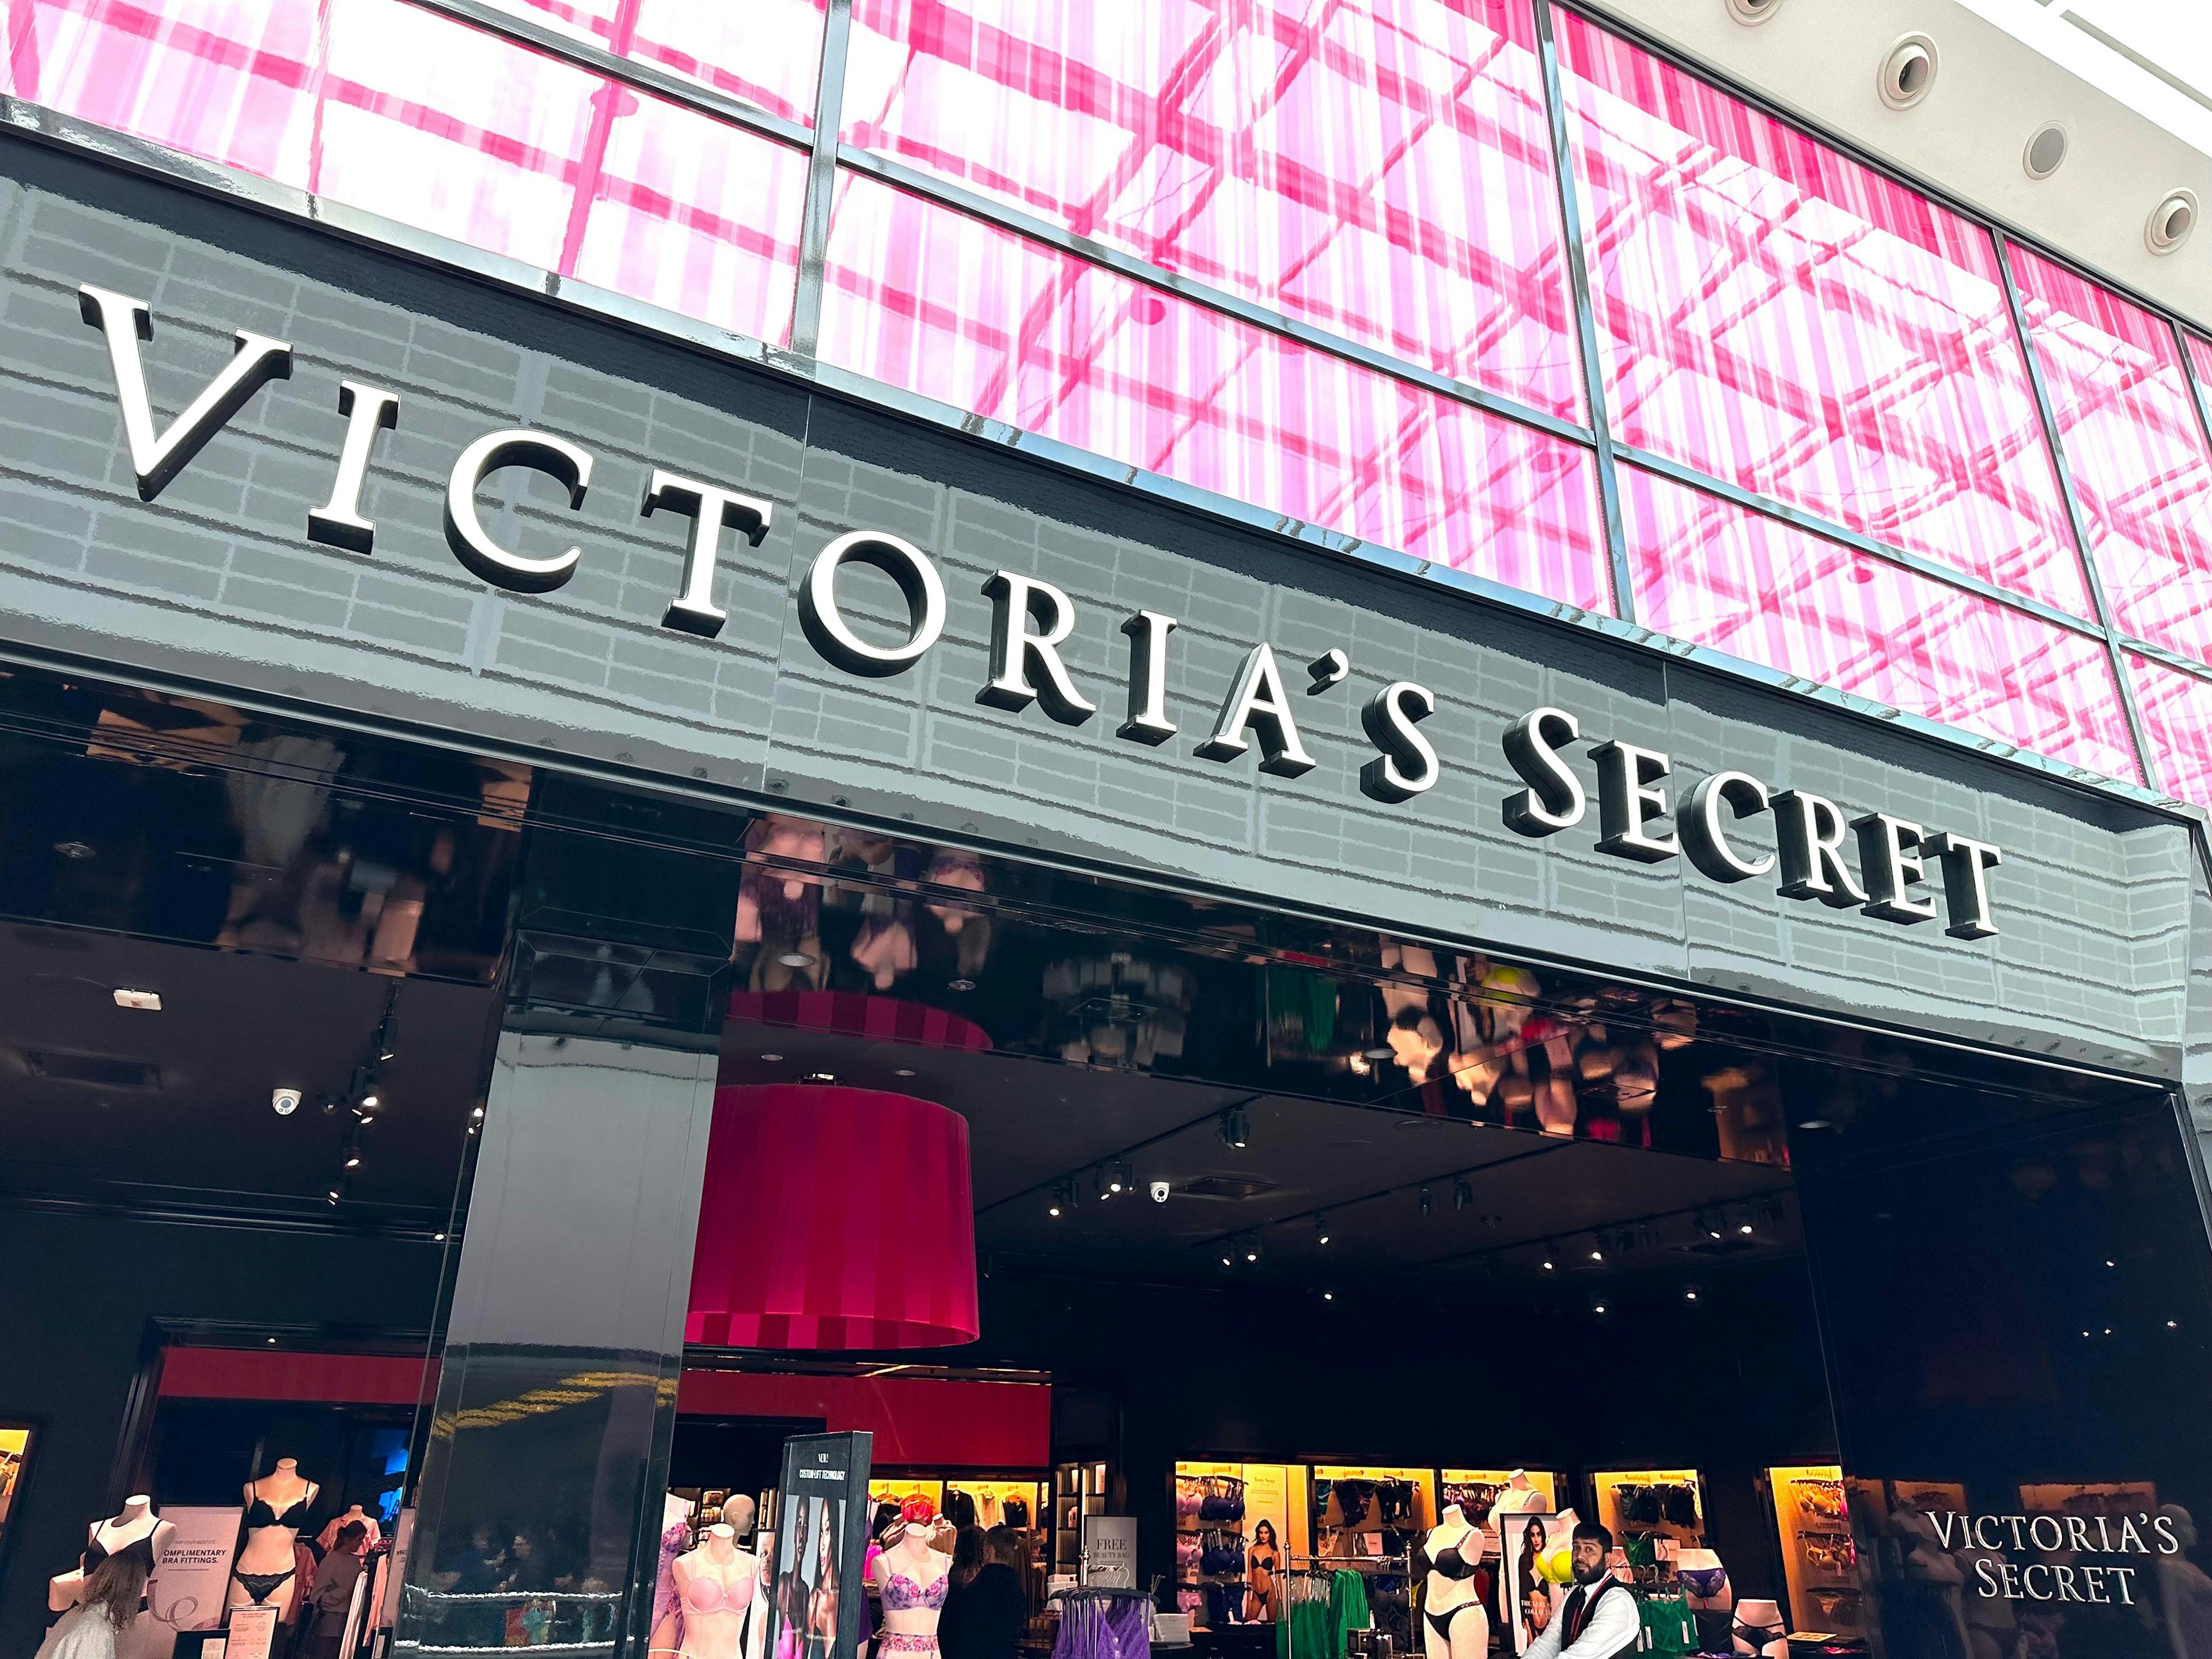 Victoria's Secret external shop signage